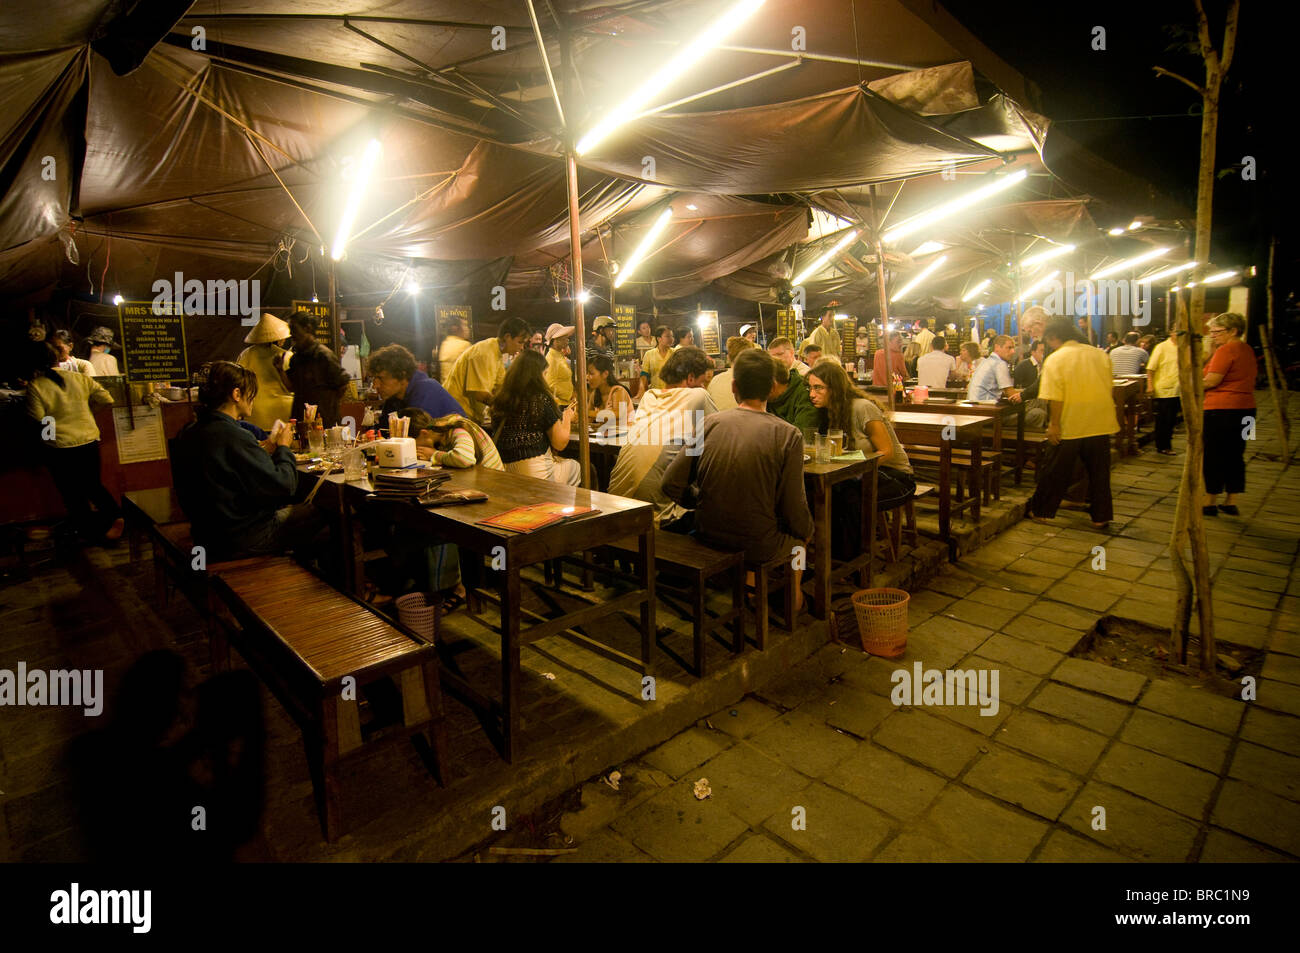 Photo de nuit de stands de nourriture, Hoi An, Vietnam, Indochine Banque D'Images